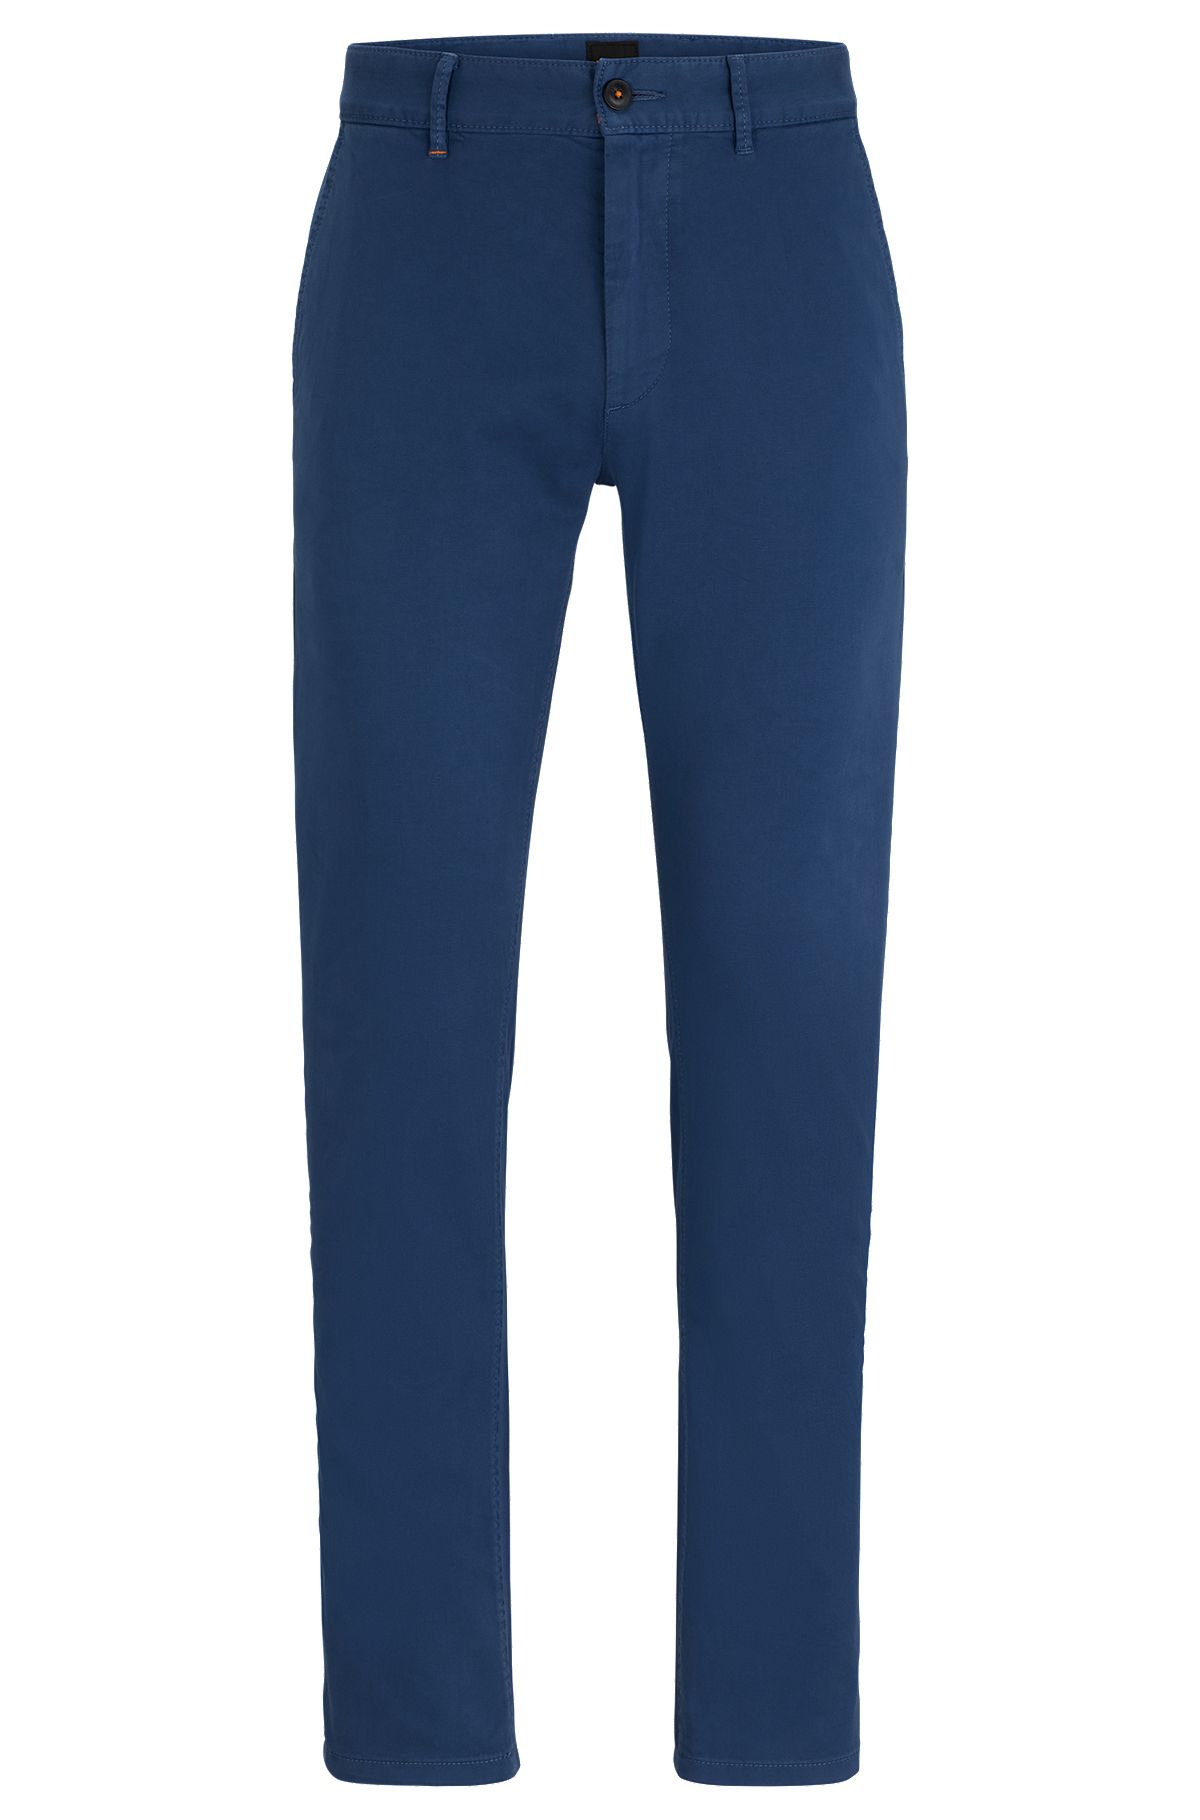 Pantalon Slim Fit en coton stretch satiné, Bleu foncé